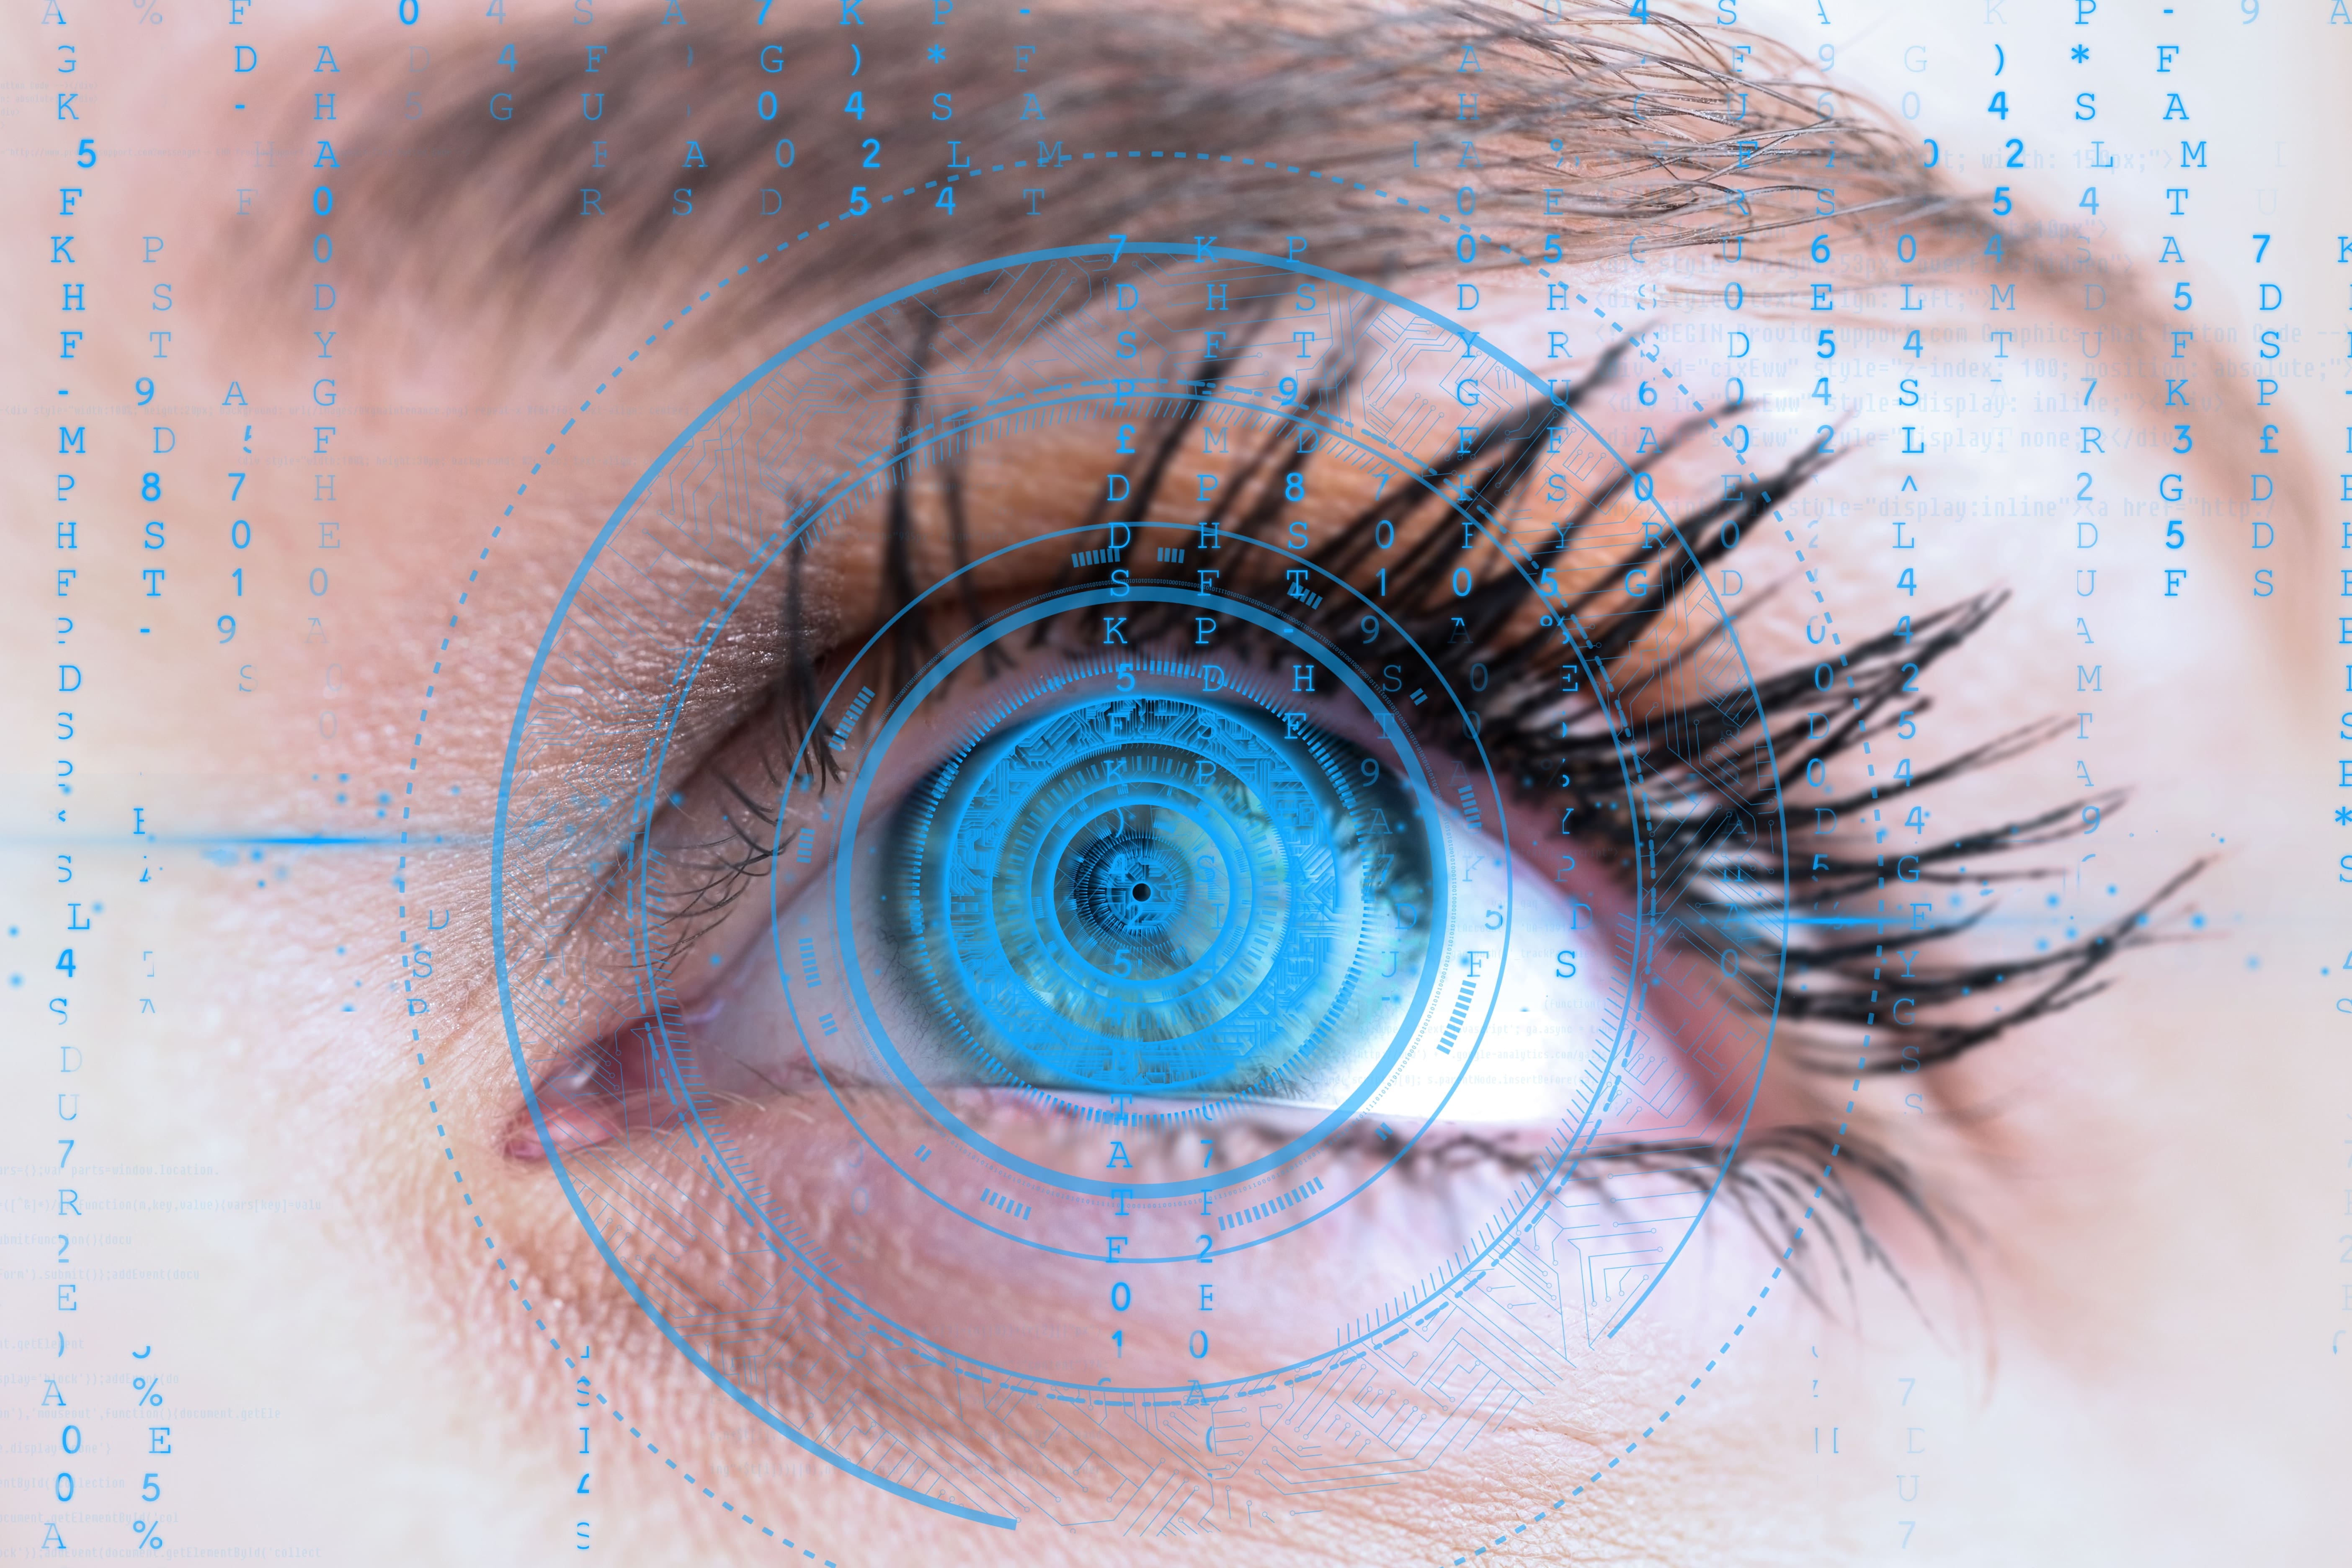 Neuro oftalmologija; što je i kada posjetiti neuro oftalmologa?